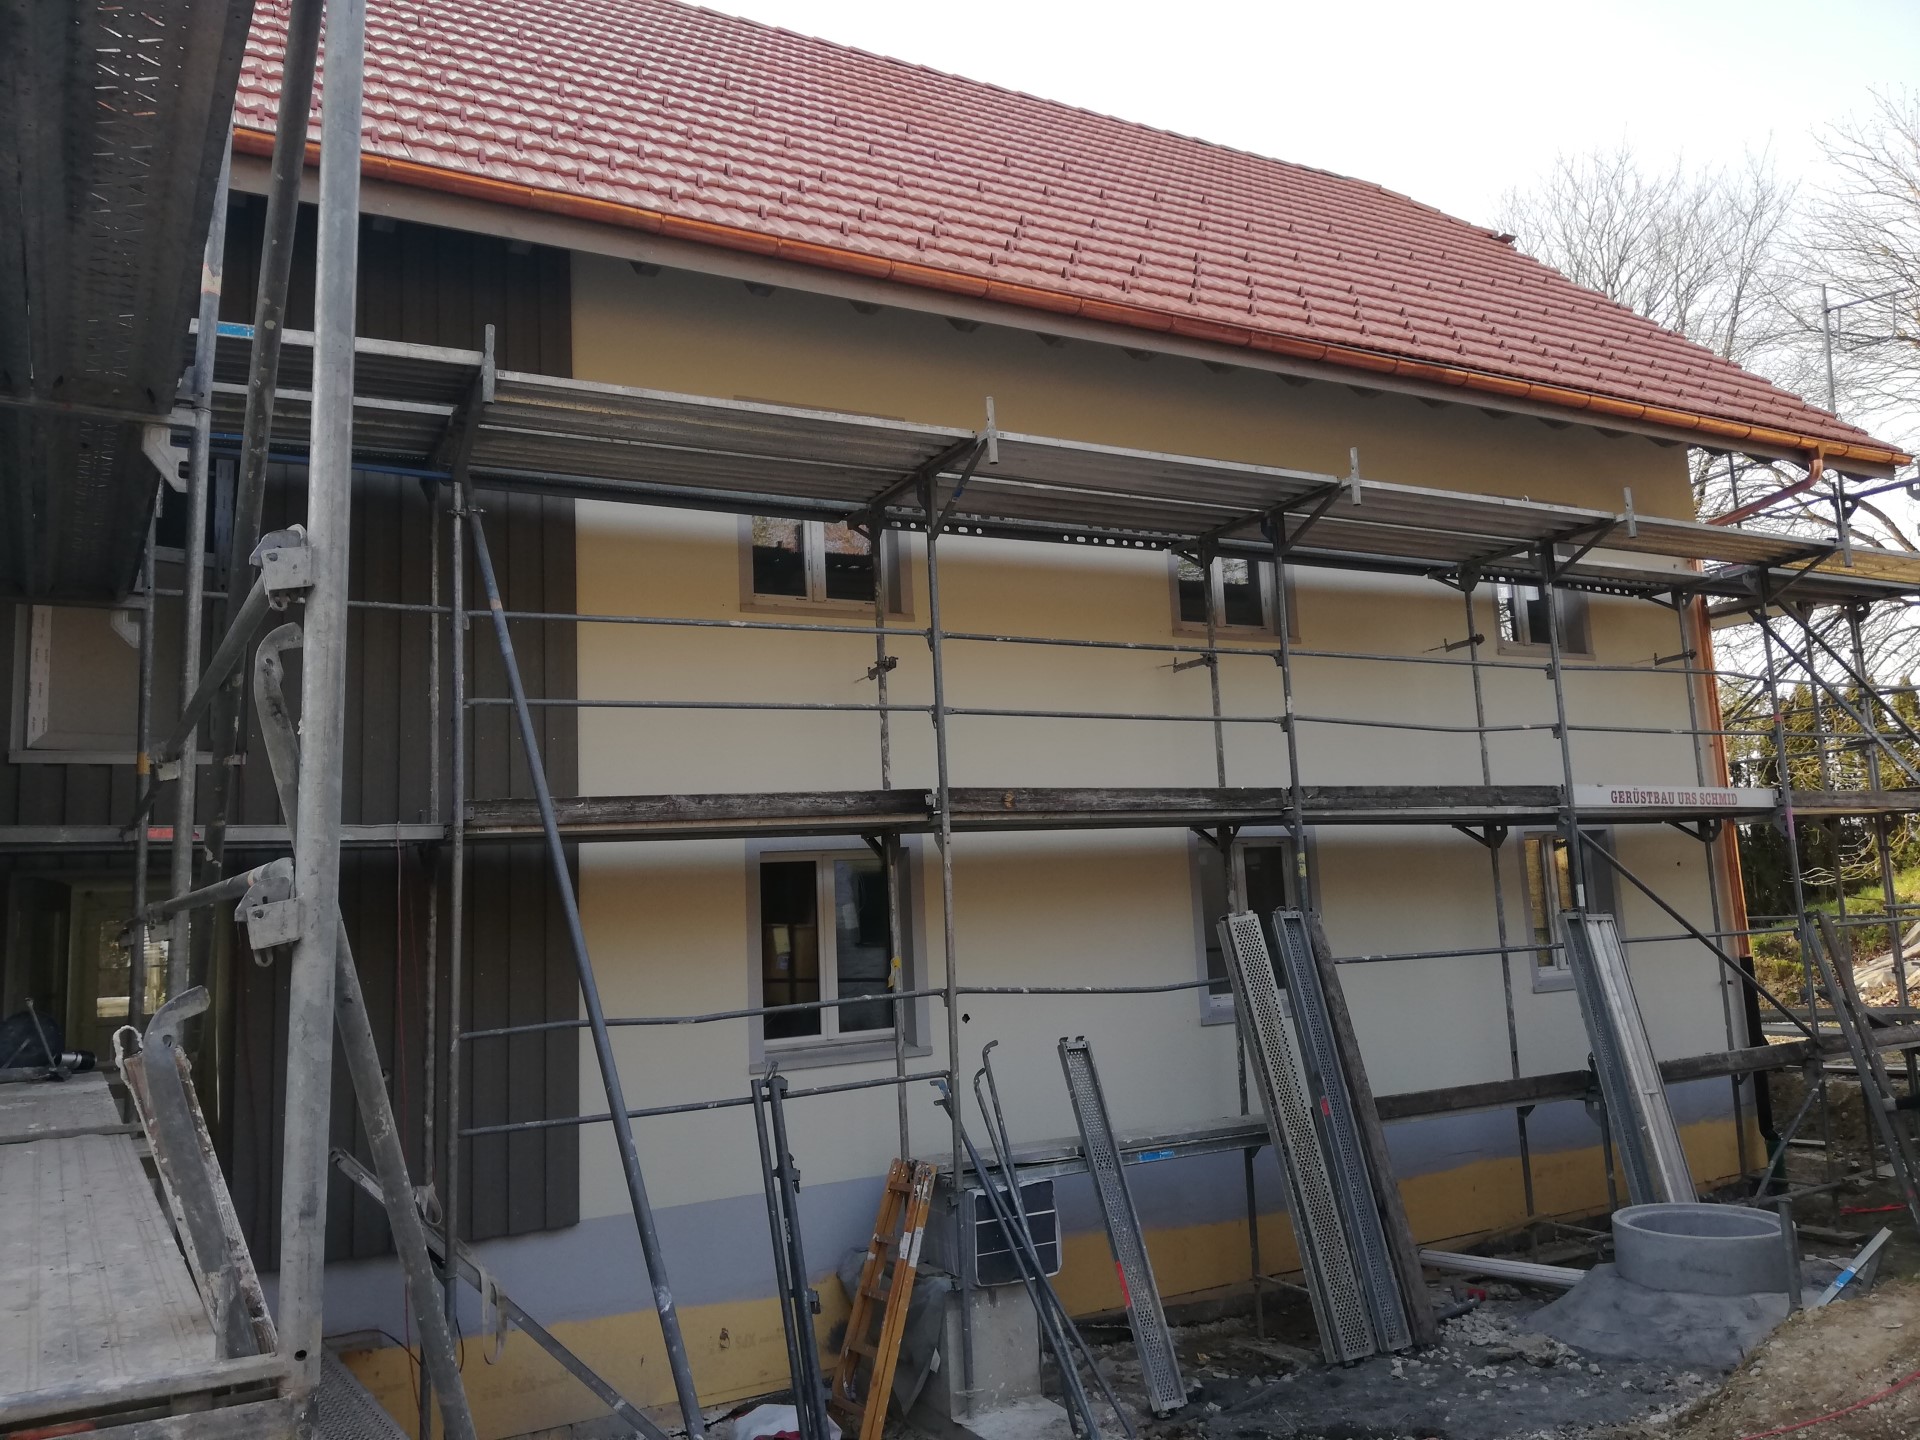 Neubau Bauernhaus, Oftringen